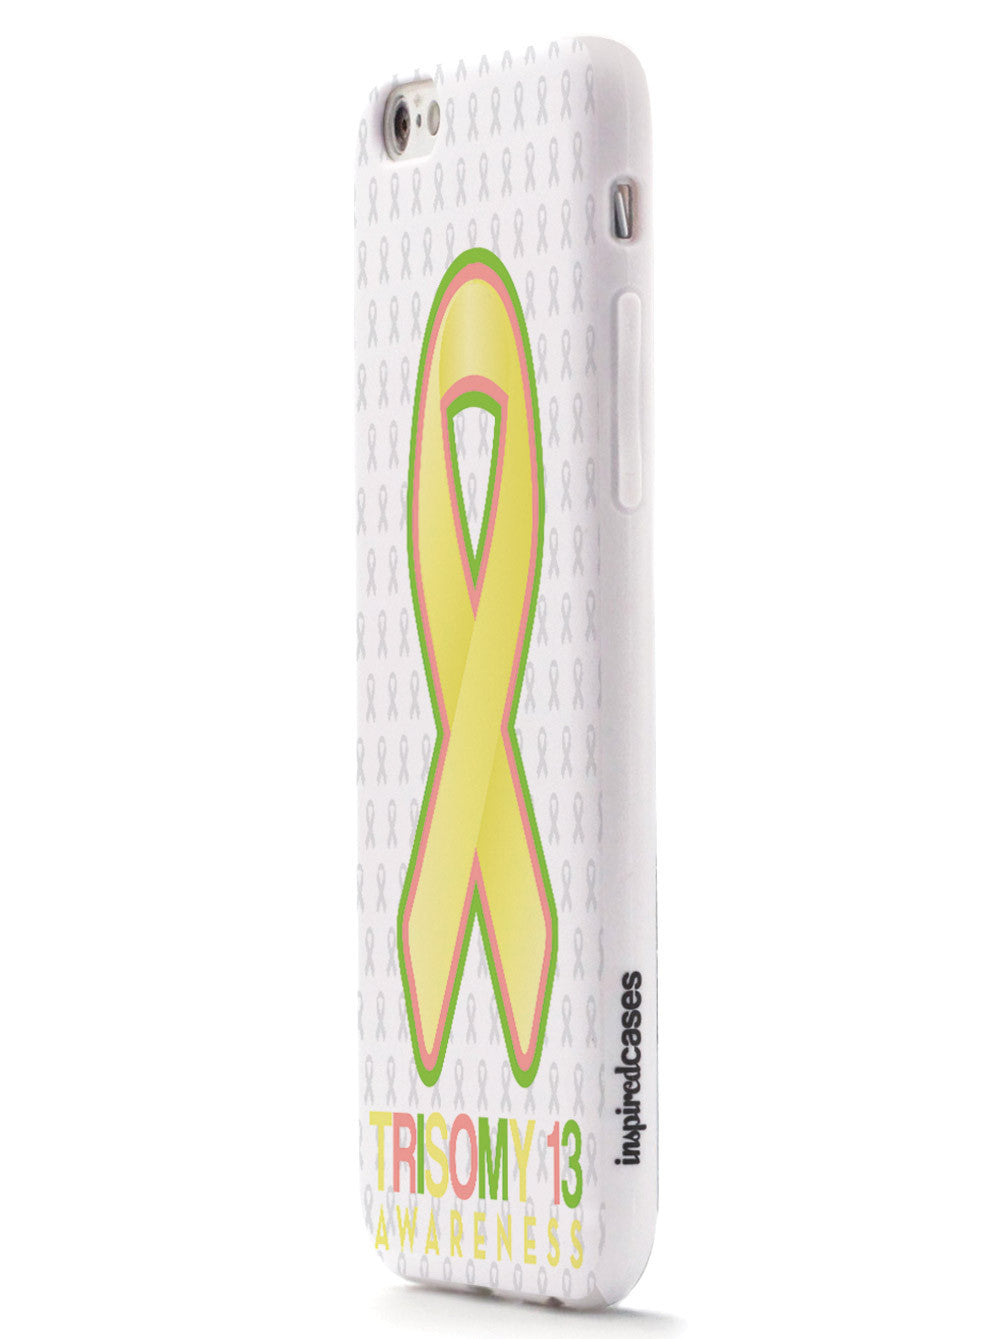 Trisomy 13 - Awareness Ribbon - White Case